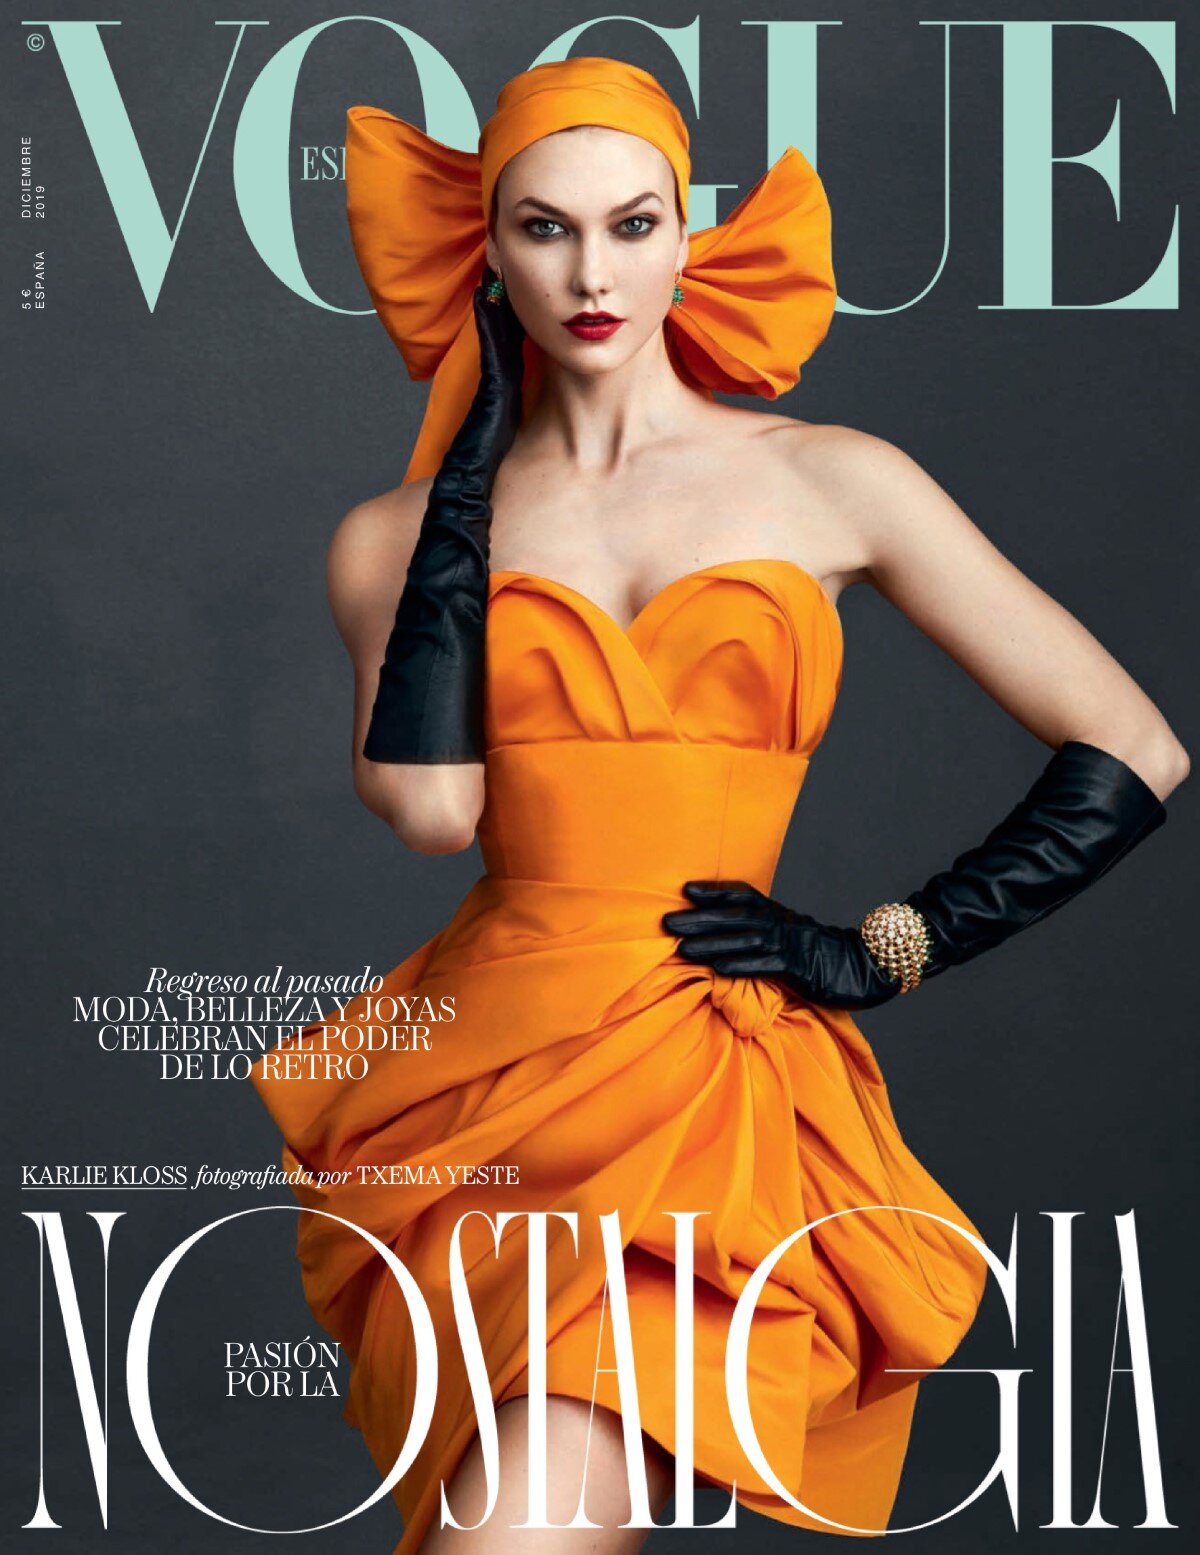 Karlie kloss by Txema Yeste for Vogue Spain December 2019 (1).jpg